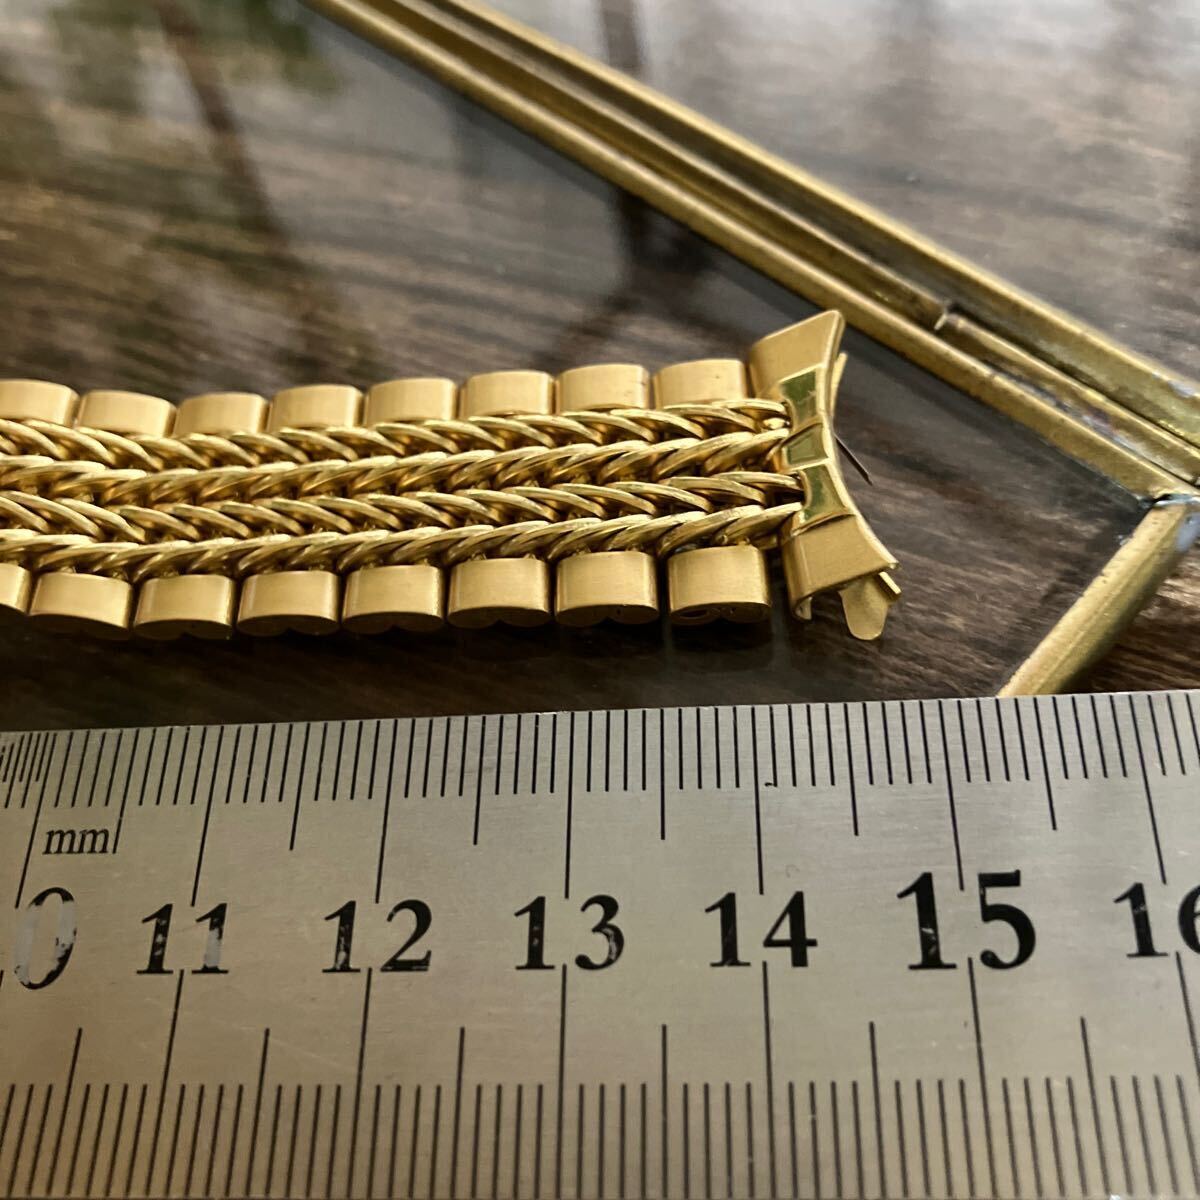 19mm золотой цвет смычок труба тросик breath часы частота часы ремень Vintage б/у товар 